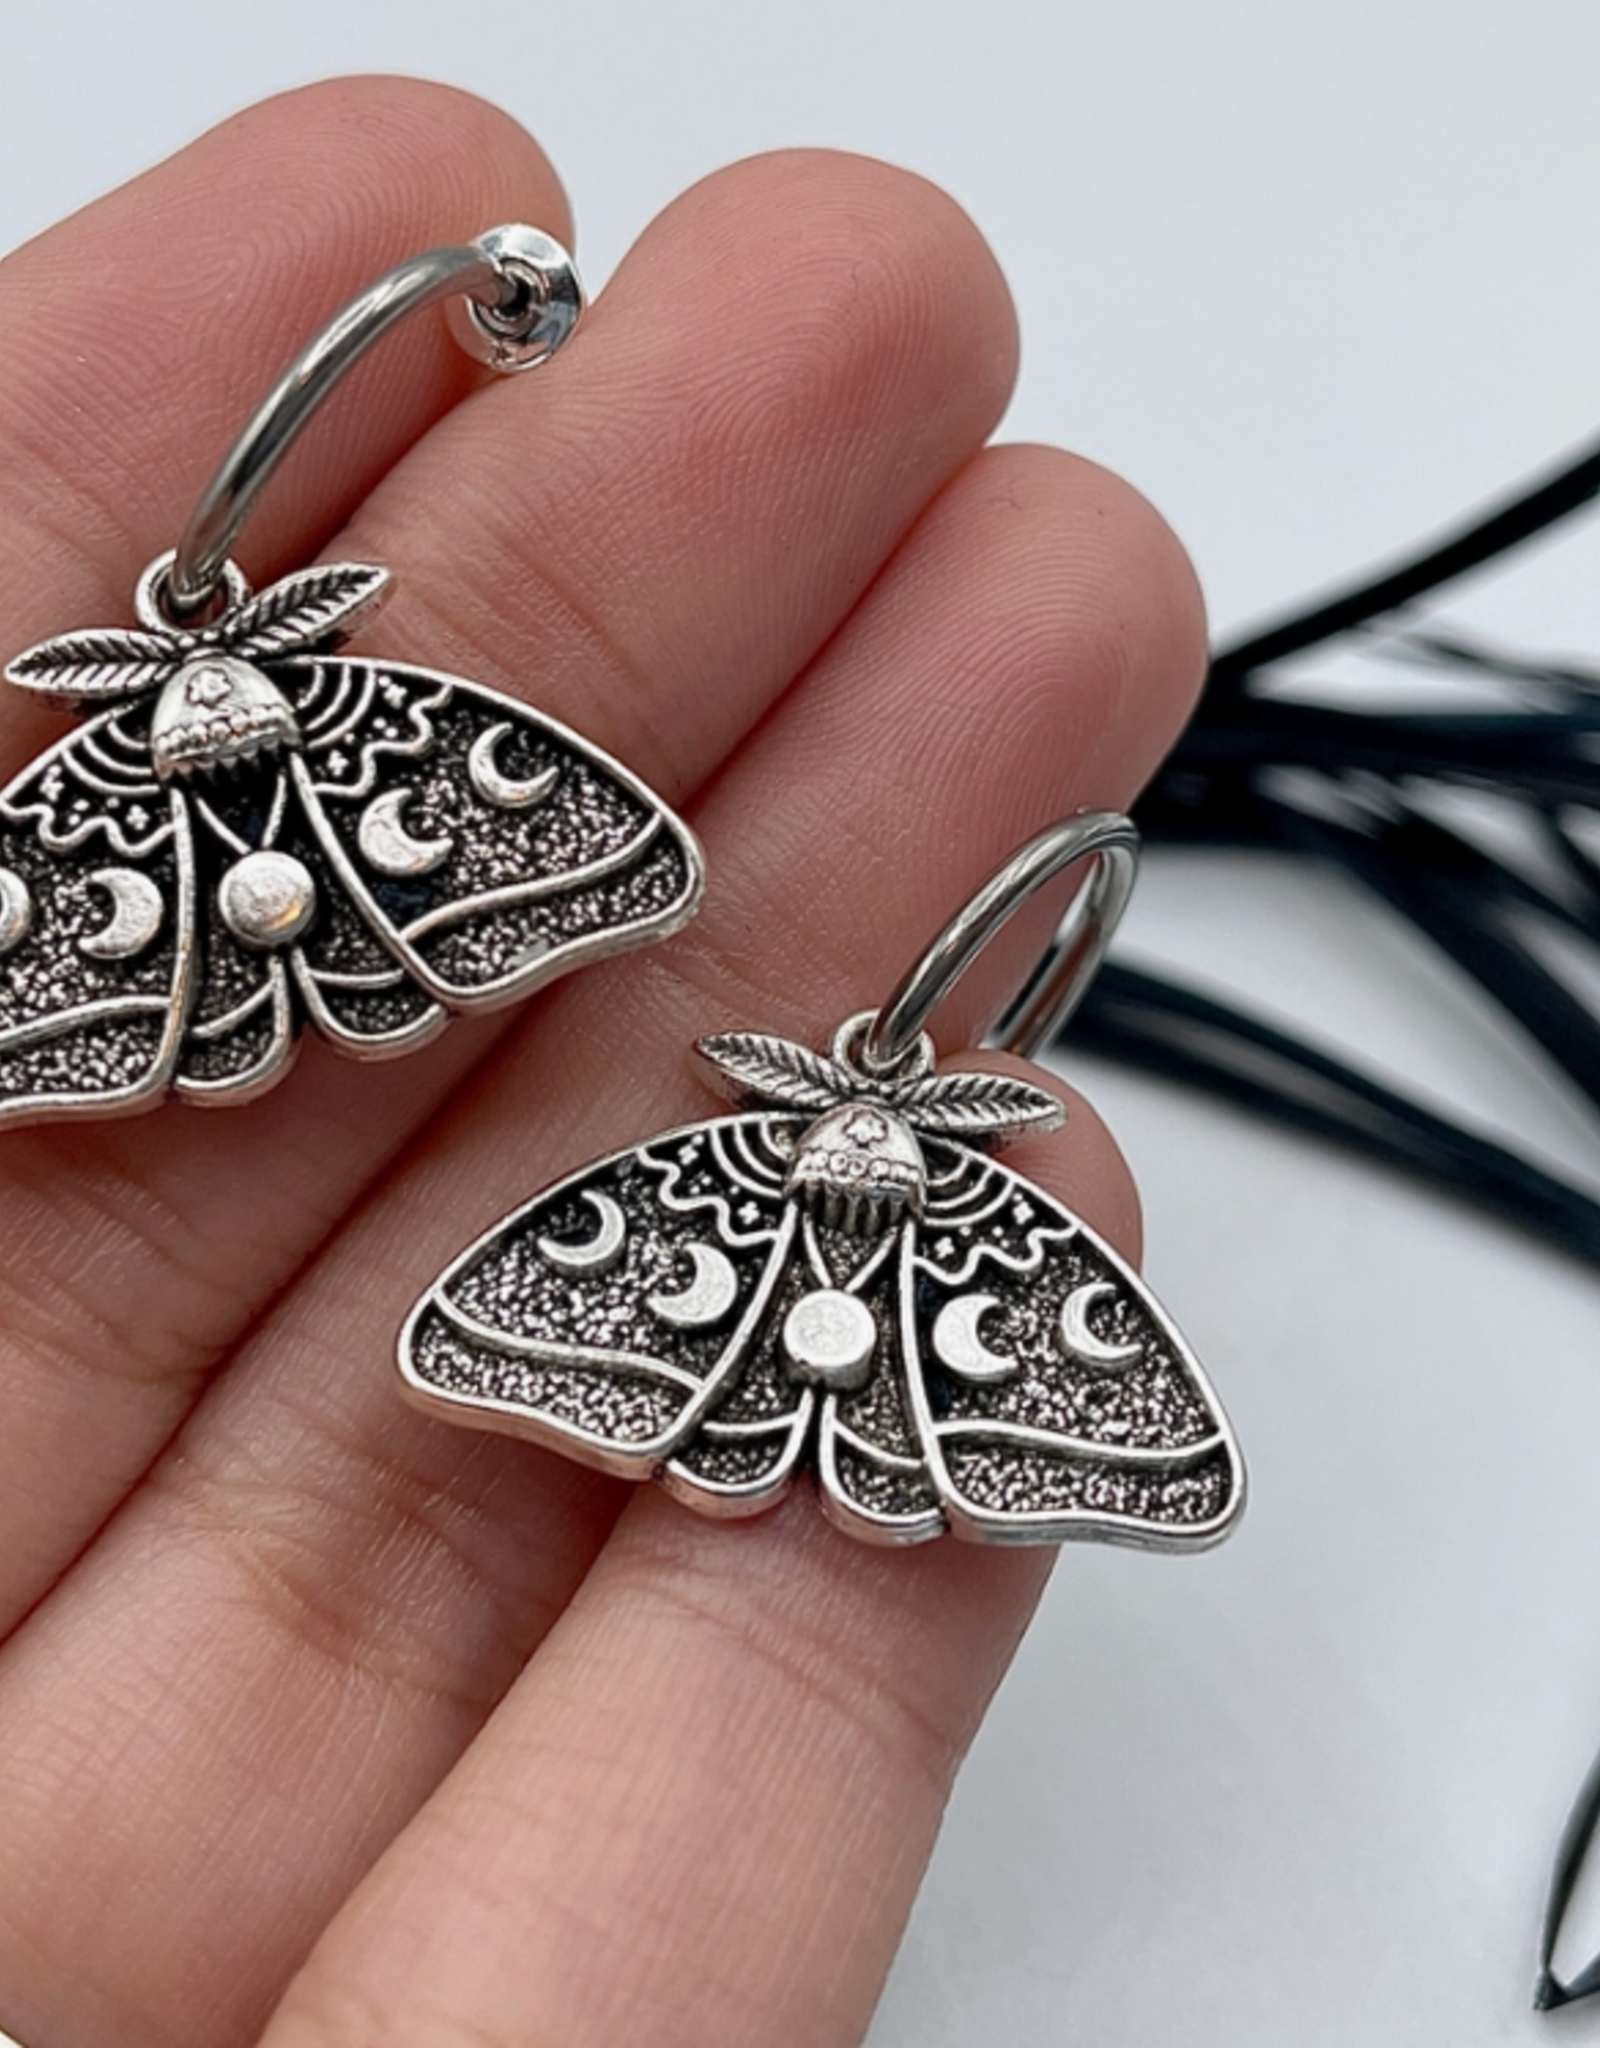 SpotLight Jewelry Silver Luna Moth Huggie Hoops